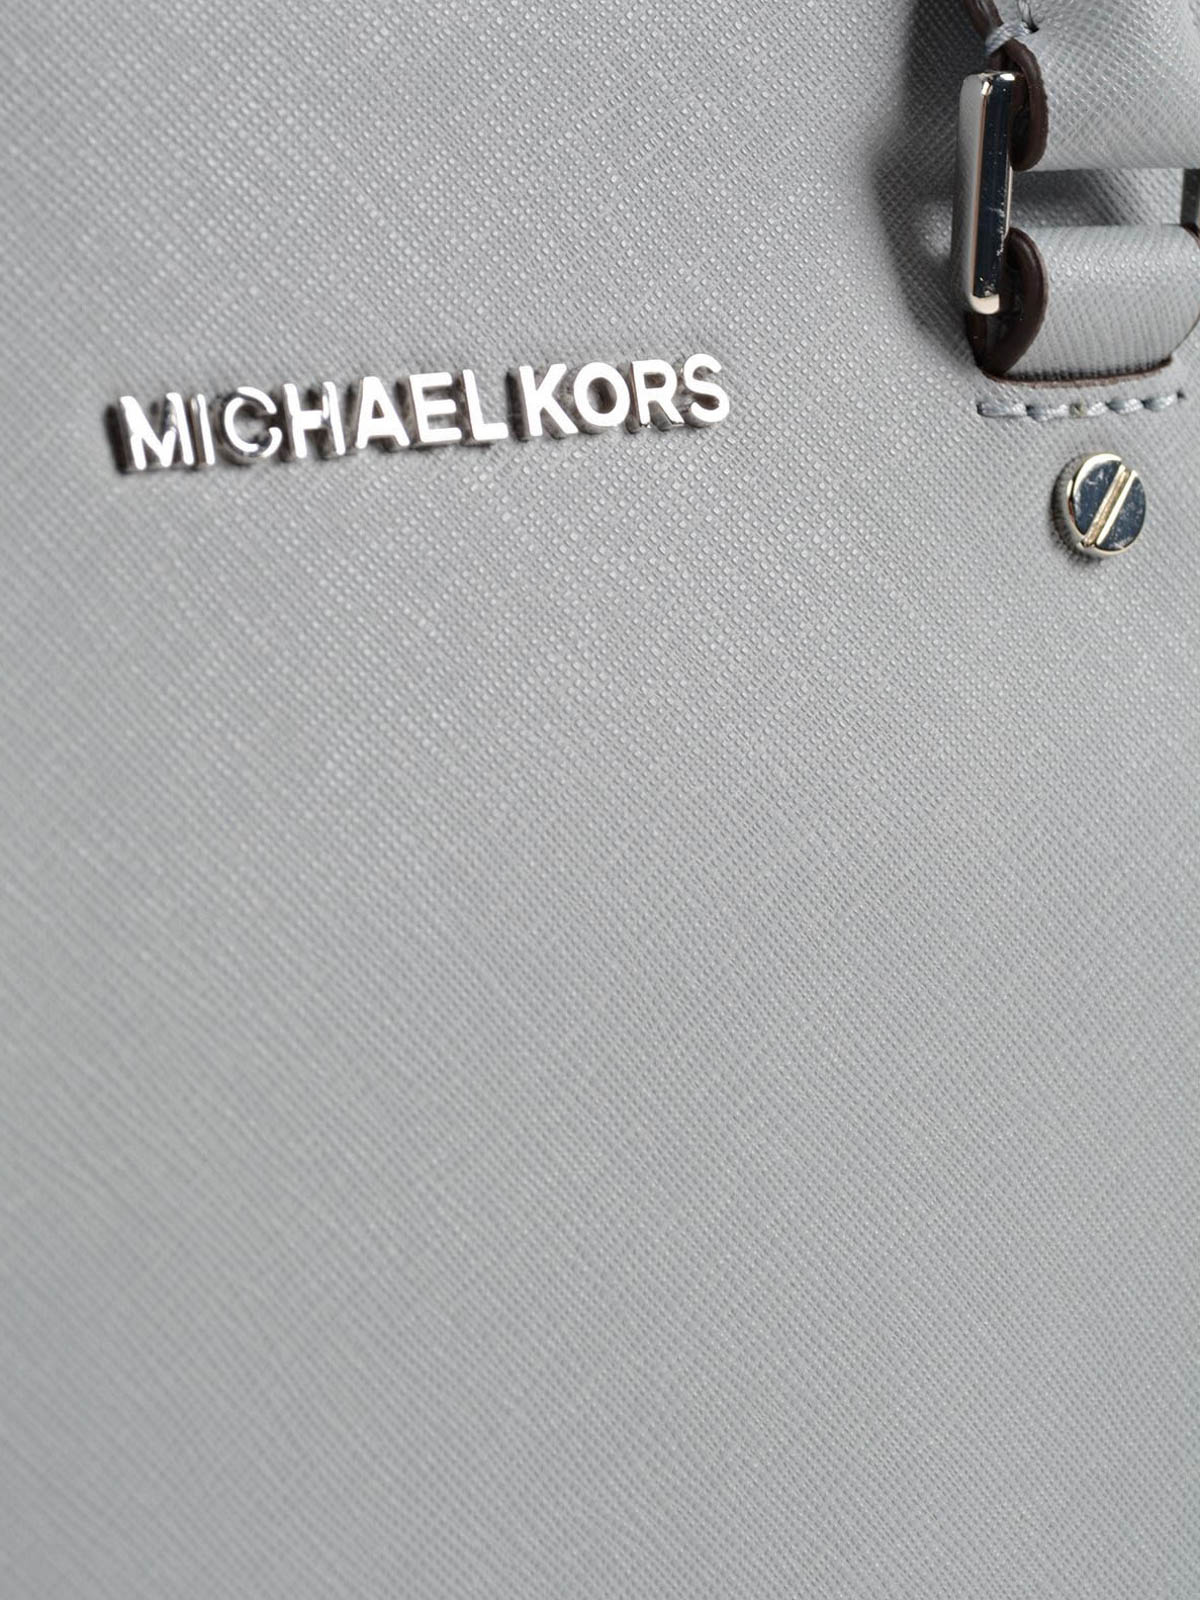 Totes bags Michael Kors - Selma medium saffiano top zip tote - 30S3GLMS2L800